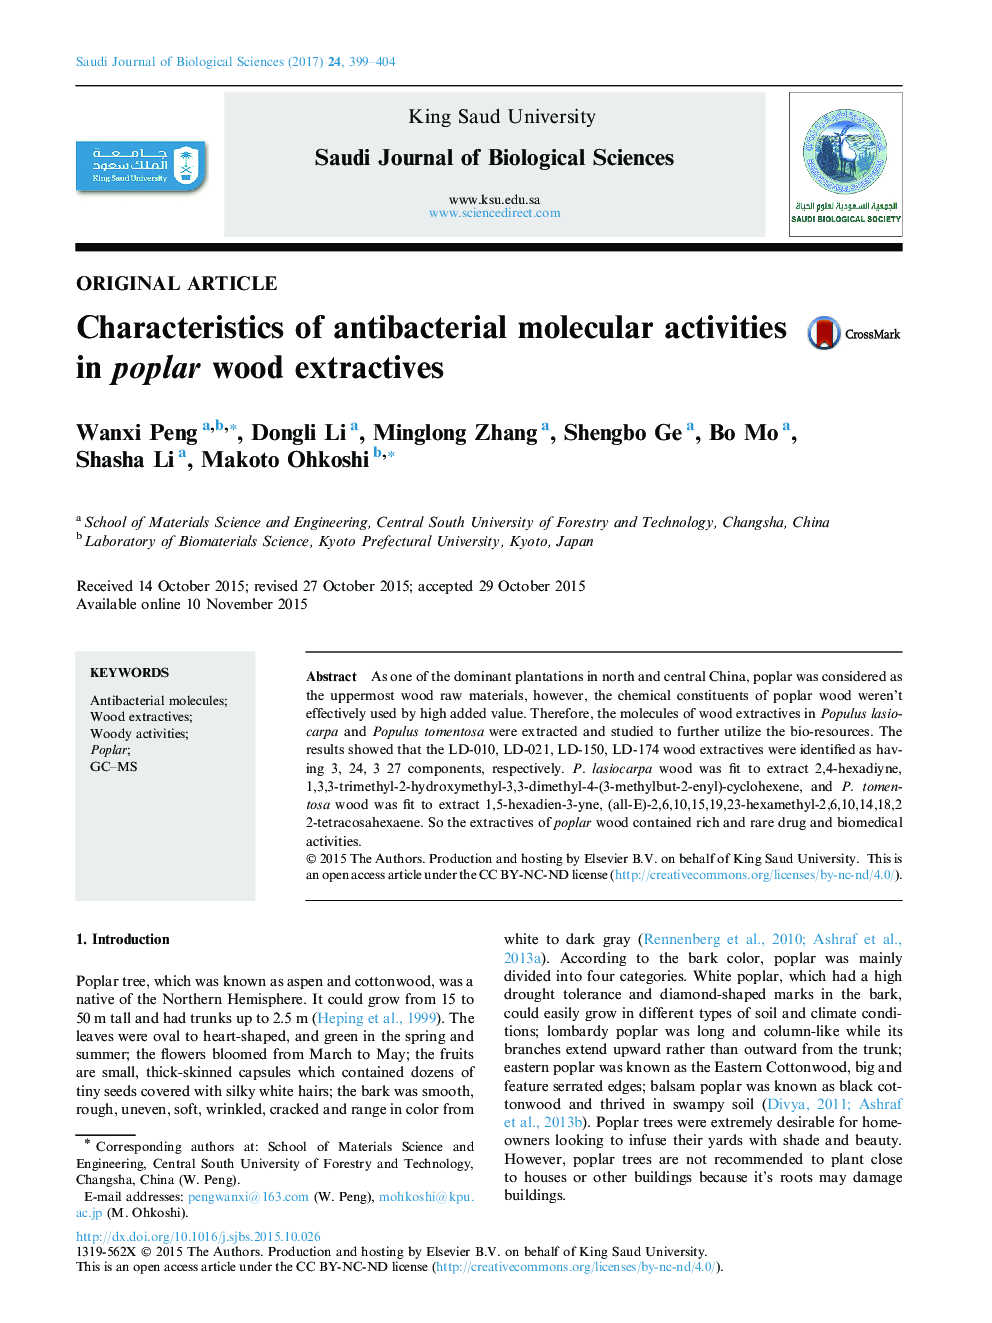 Original articleCharacteristics of antibacterial molecular activities in poplar wood extractives